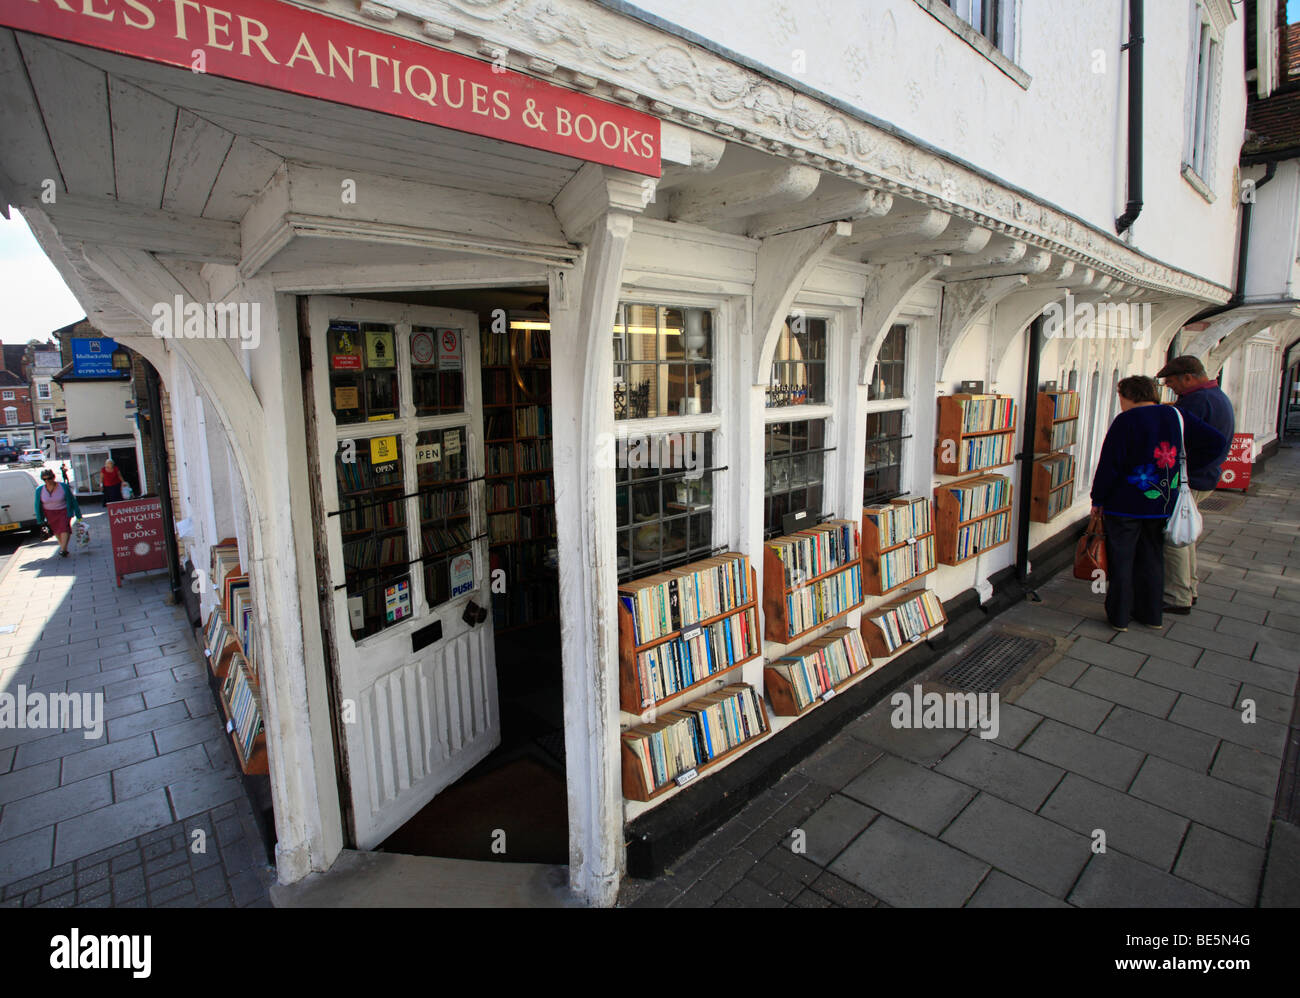 Lankester Antiquités et livres, Saffron Walden, Essex, Angleterre. Banque D'Images